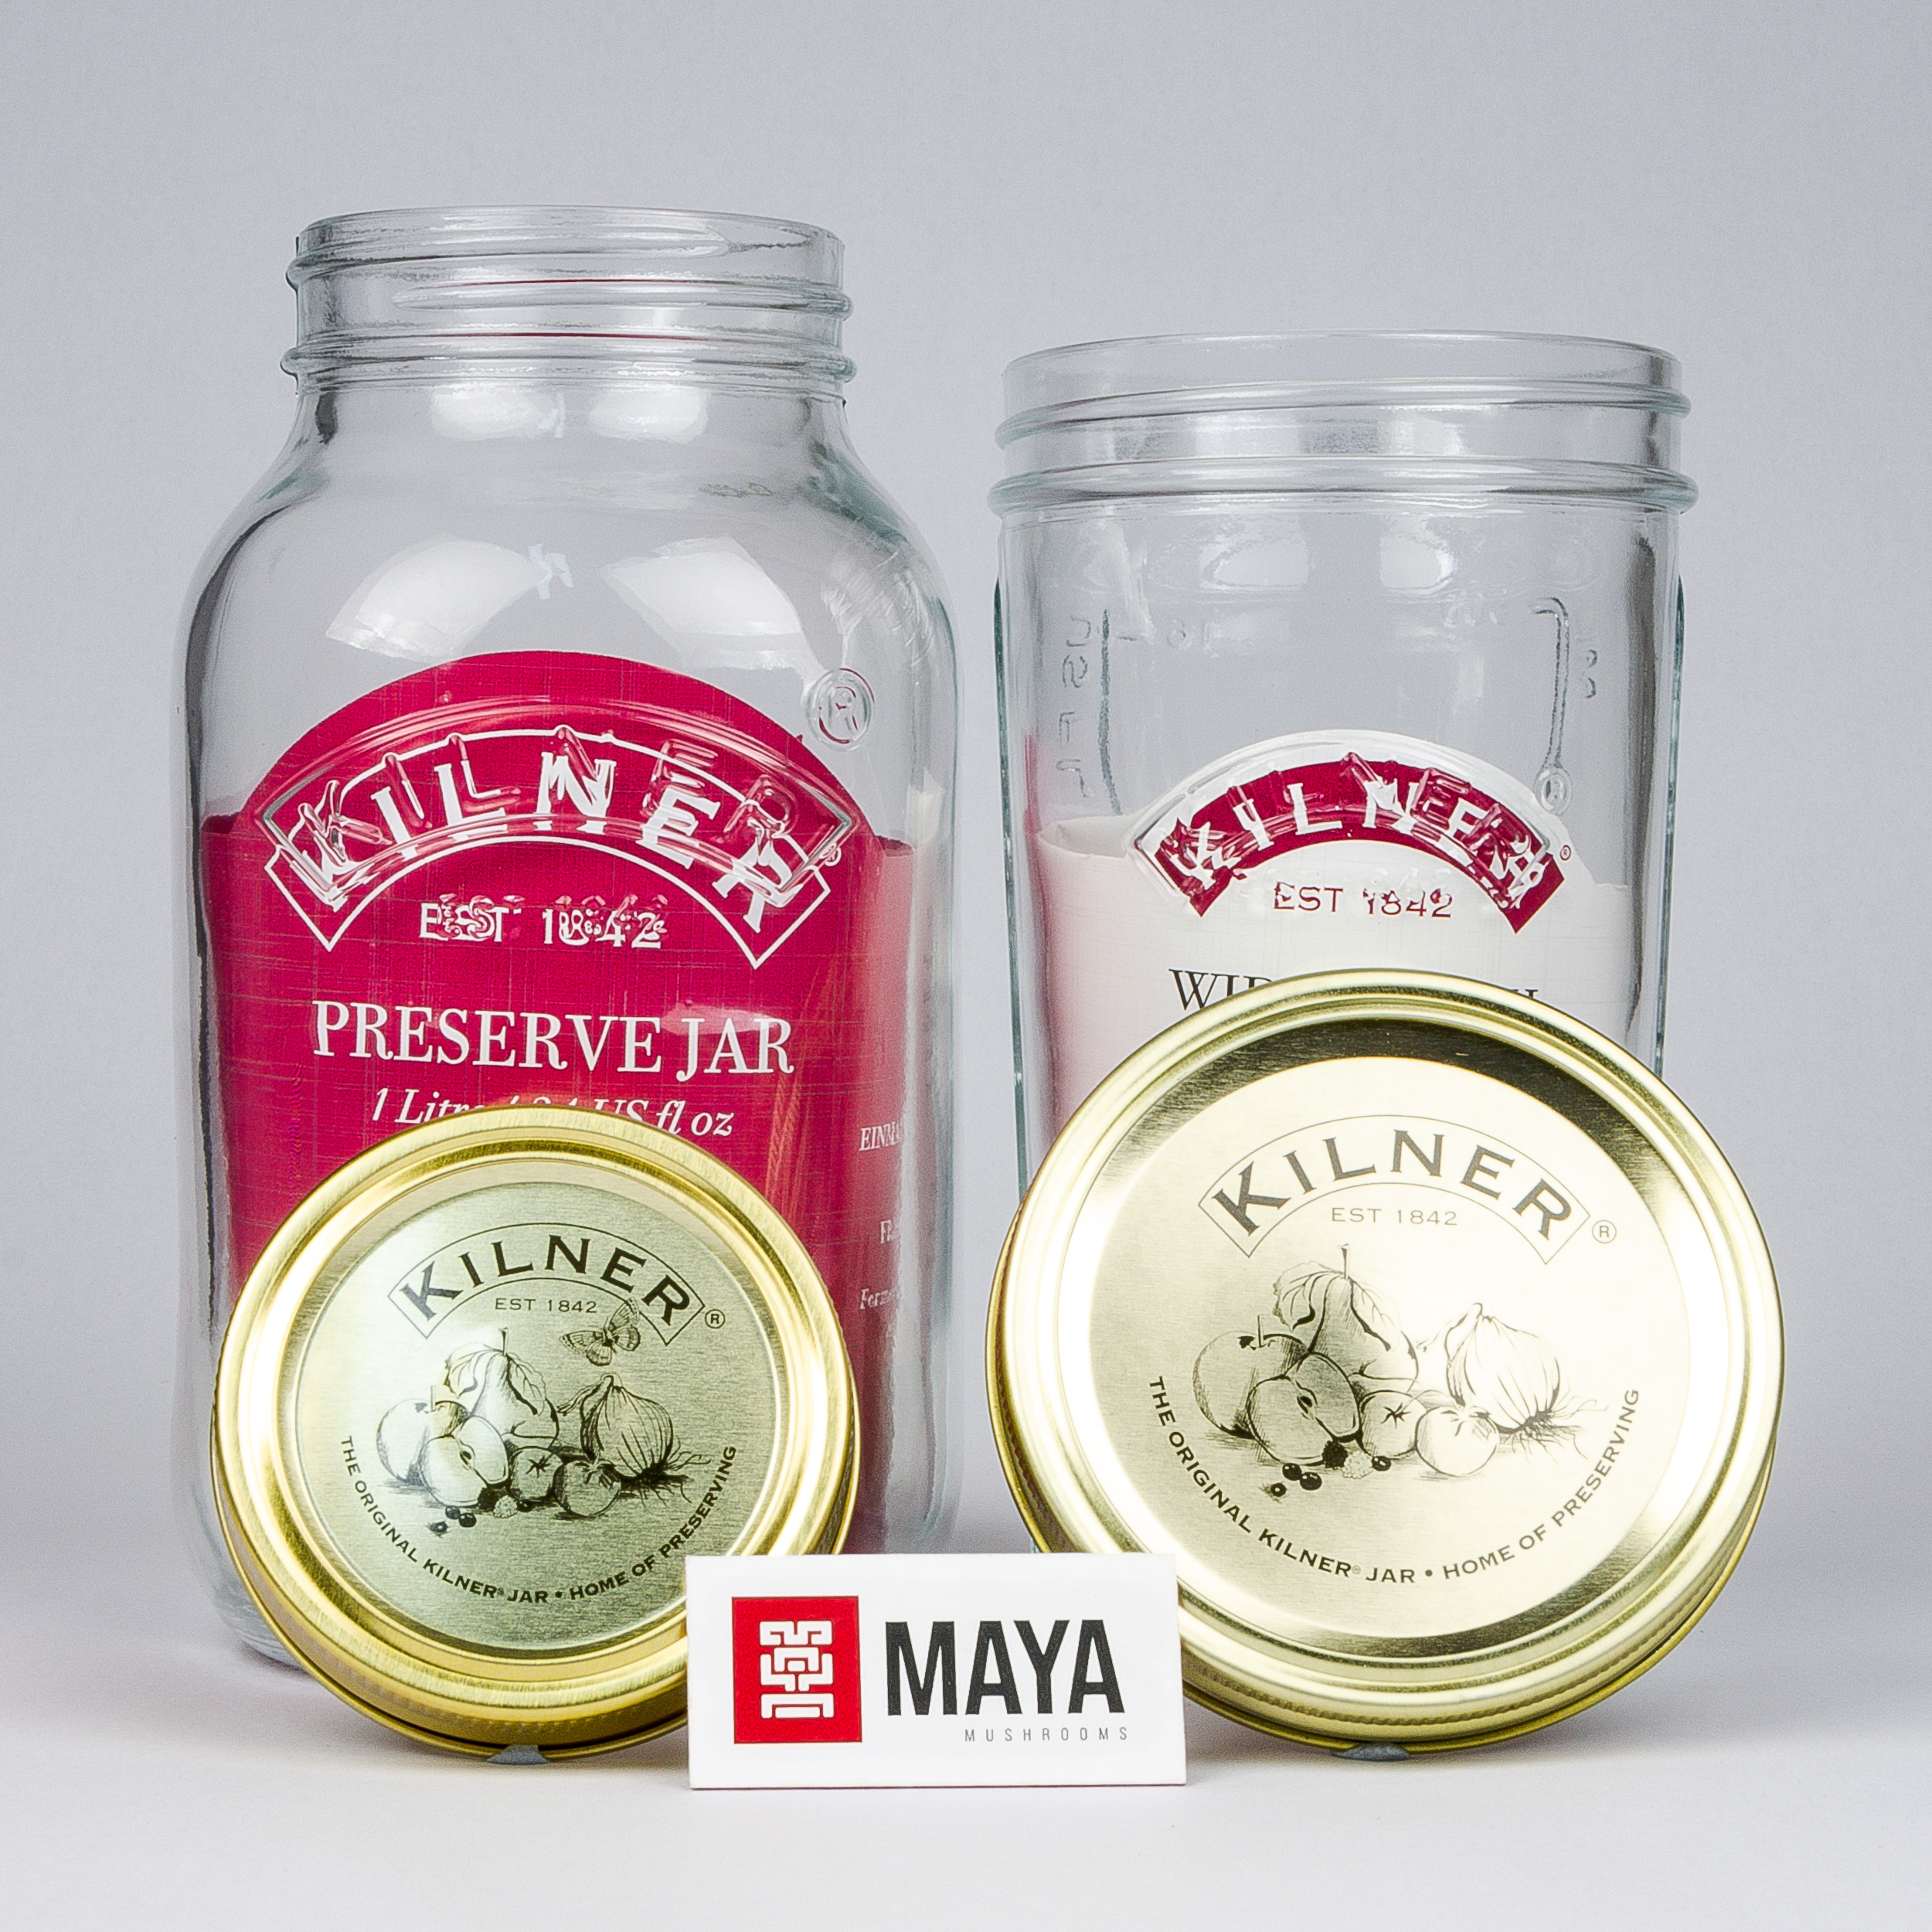 Kilner Preserve Jar, 1 litre, 0.5 litre lids off